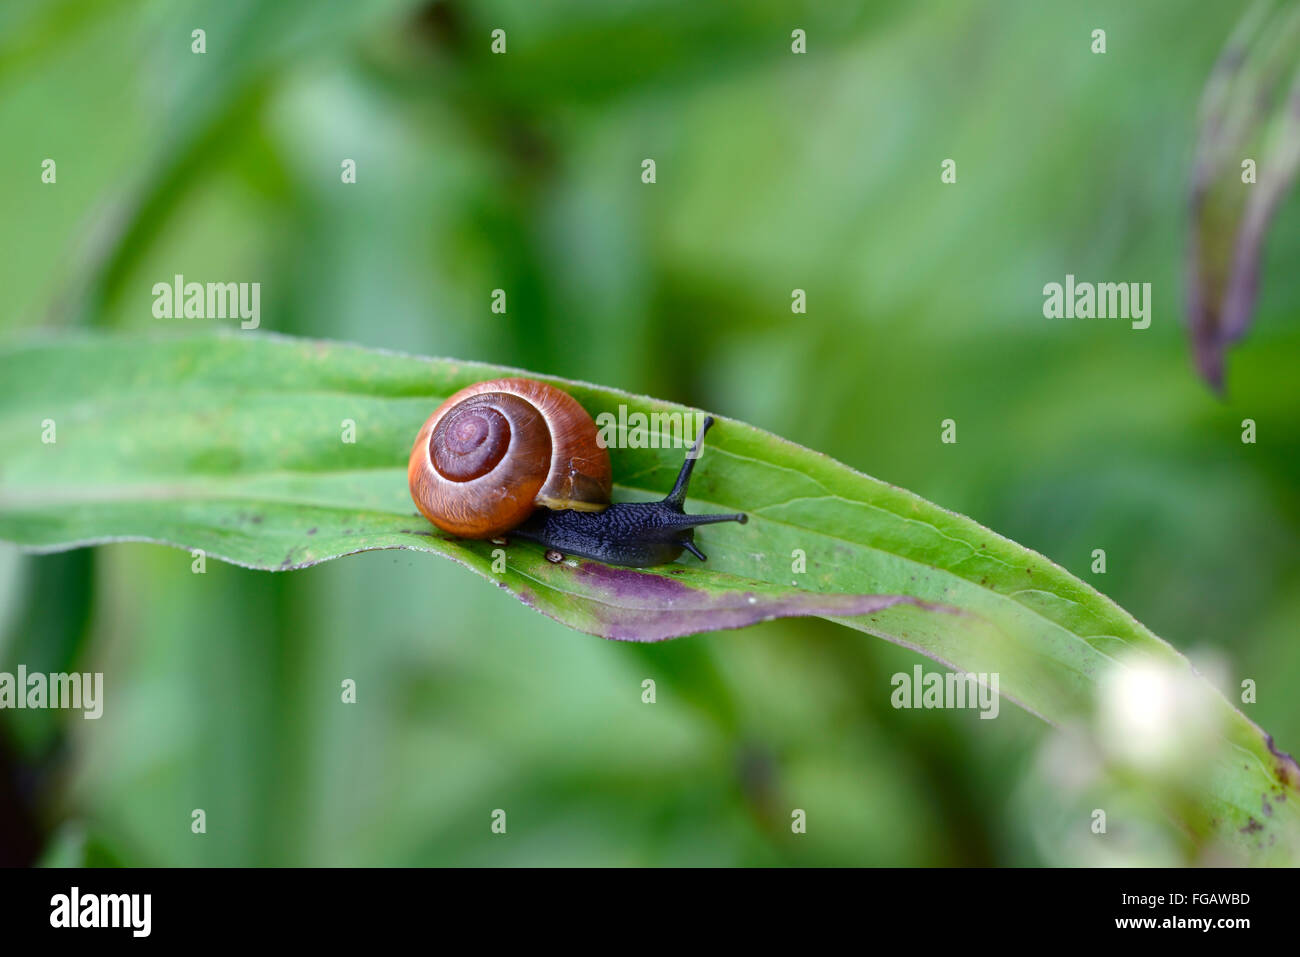 Garten-Schnecke Molluske Schädling auf einer dünnen Digitalis Ferruginea Blatt Folie gleiten Glide gleiten Gartenarbeit RM Floral Stockfoto